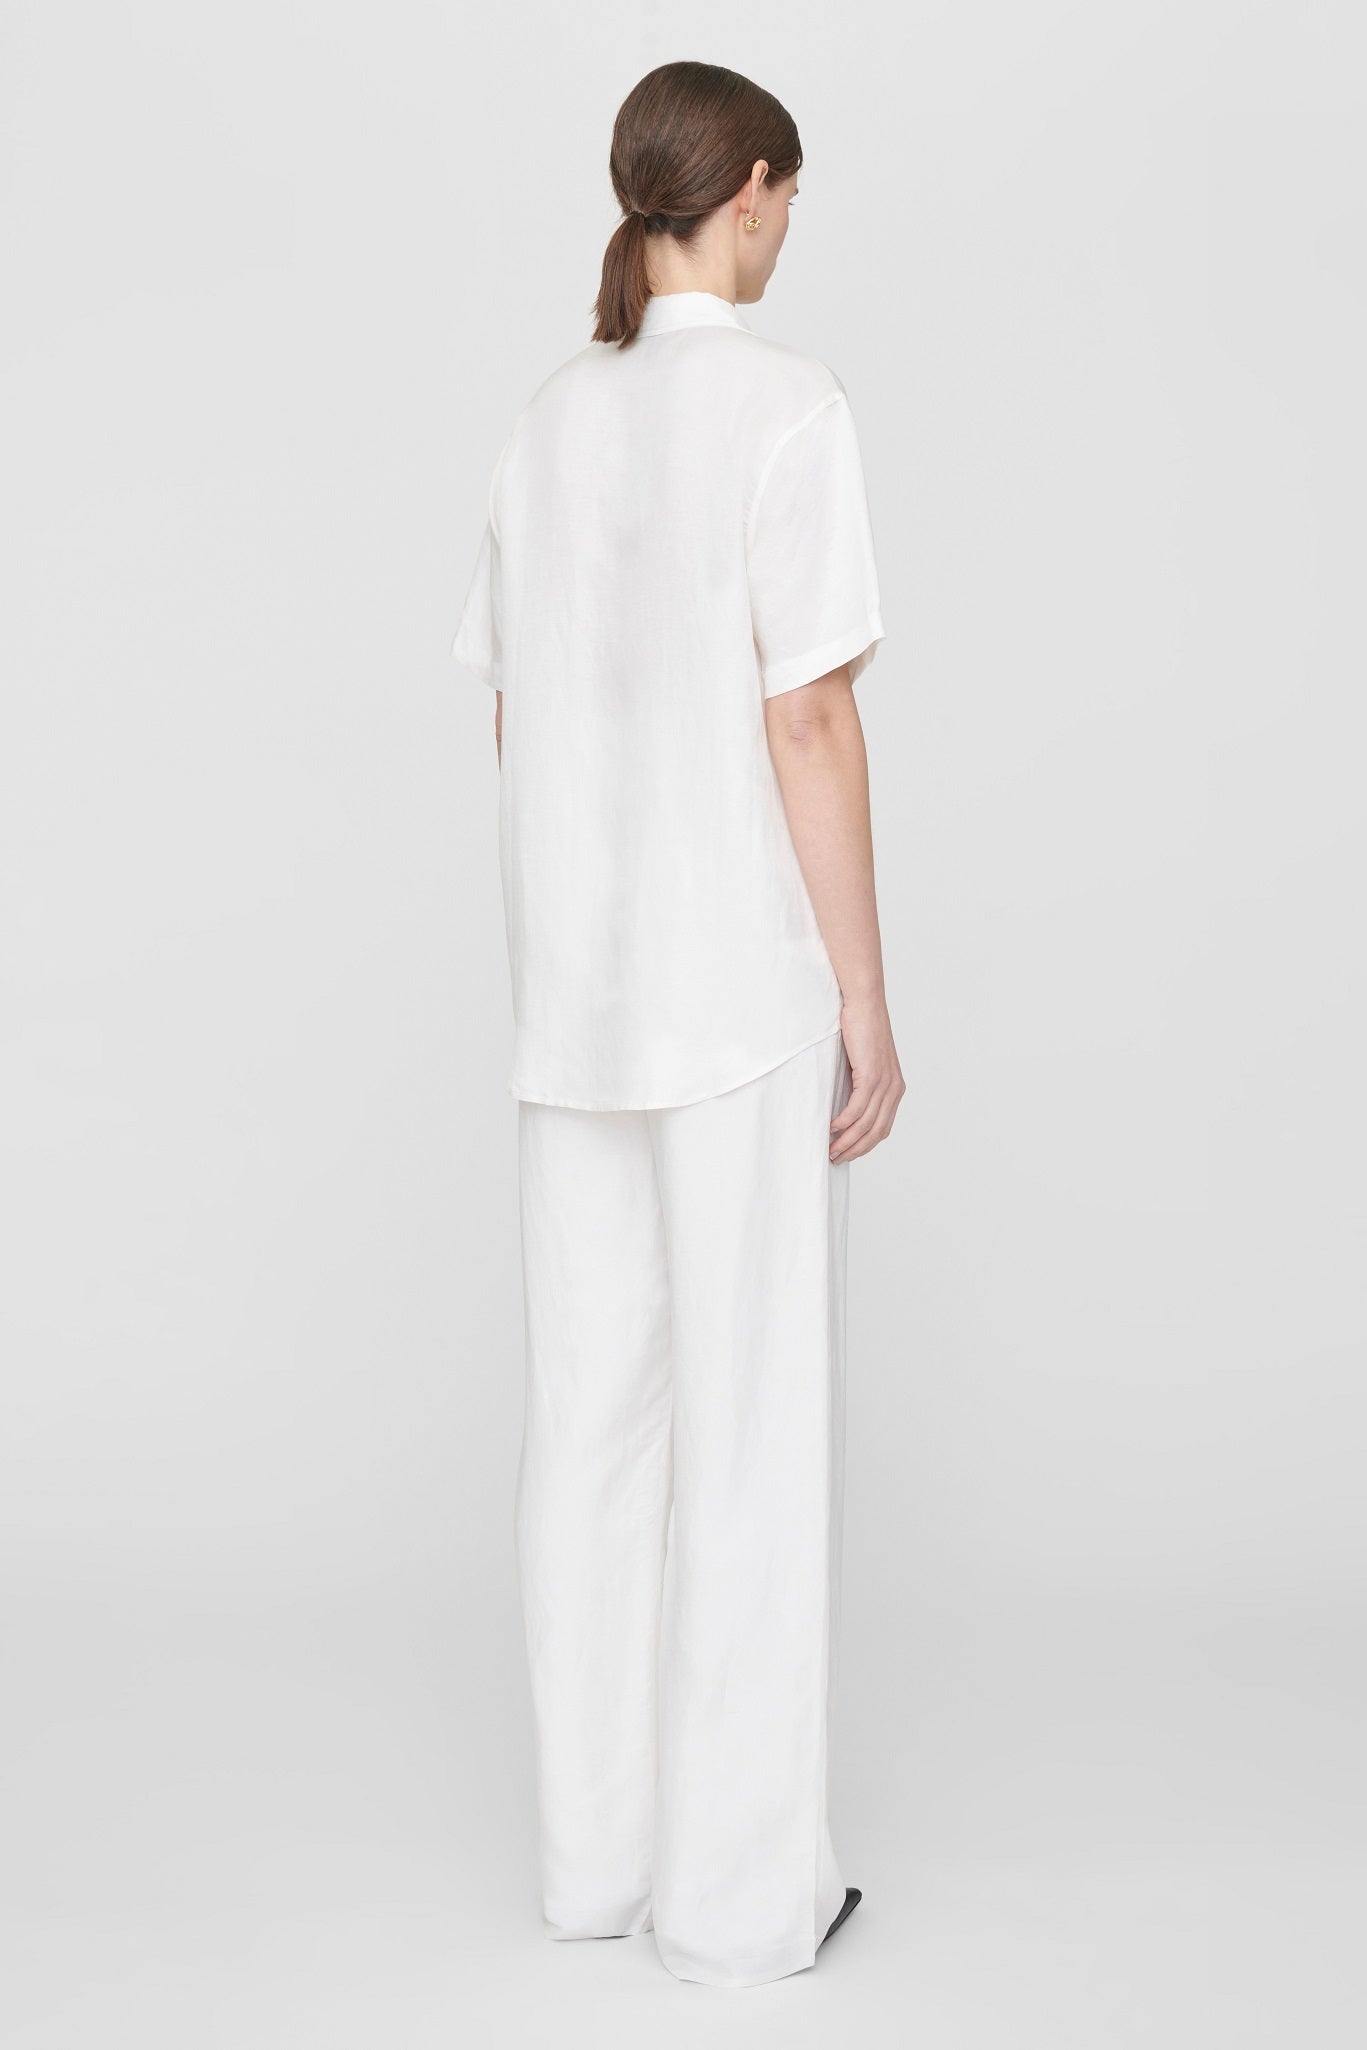 Anine Bing Bruni Shirt - White